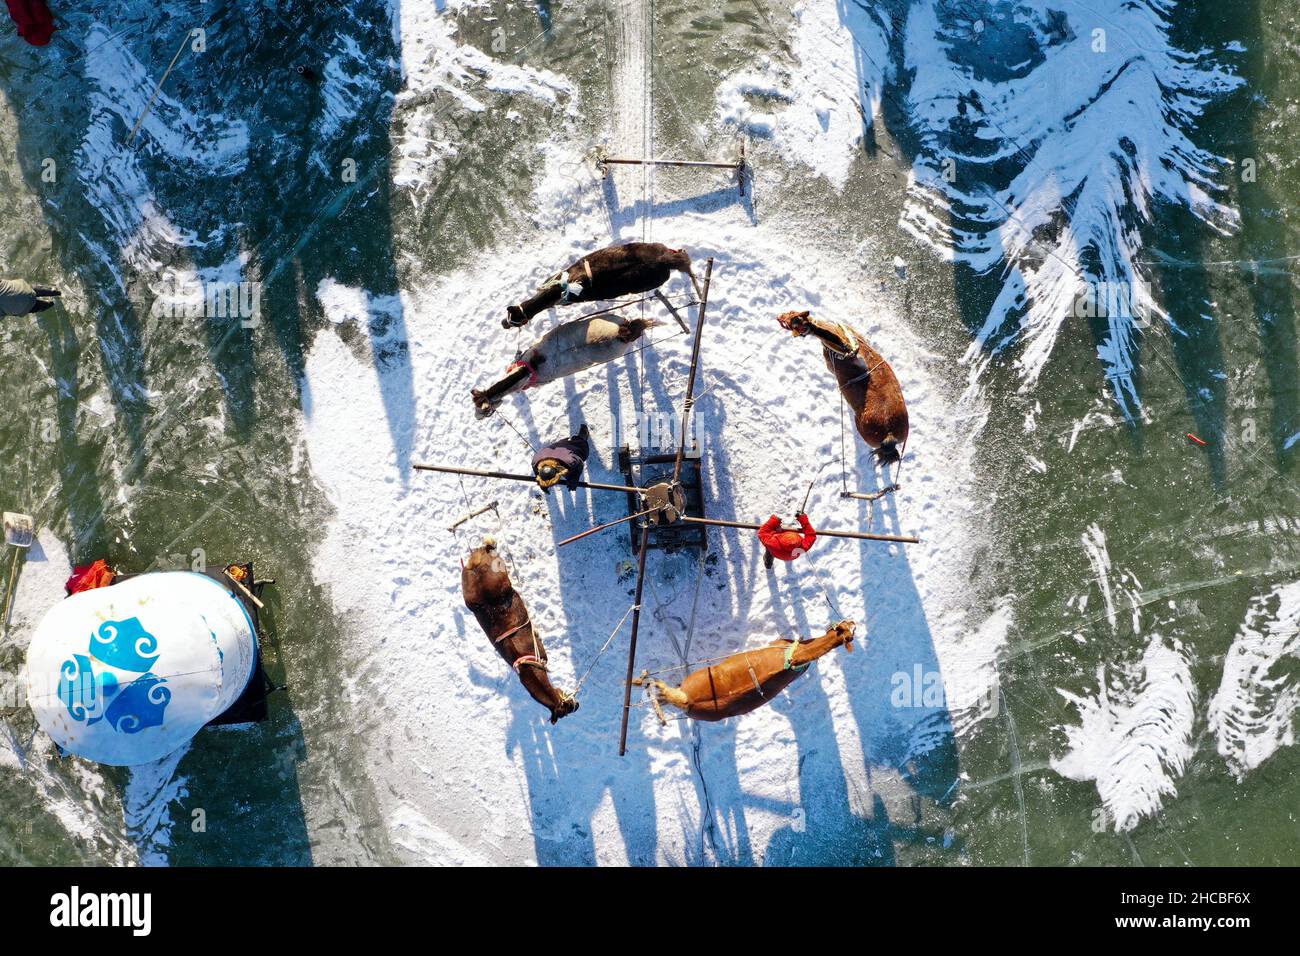 Songyuan. 26th Dez 2021. Luftaufnahme vom 26. Dezember 2021 zeigt Fischer, die Fische am Chagan-See in Songyuan, nordöstlich der Provinz Jilin, fangen. Jahrhundertelang haben Fischer und Frauen, die am See leben, die Tradition des Eisfischens am Leben erhalten - man bohrt Löcher durch dickes Eis und legt Netze unter, um Fische zu fangen. Die Technik wurde als eine Form des immateriellen Kulturerbes auf nationaler Ebene aufgeführt. Quelle: Yan Linyun/Xinhua/Alamy Live News Stockfoto